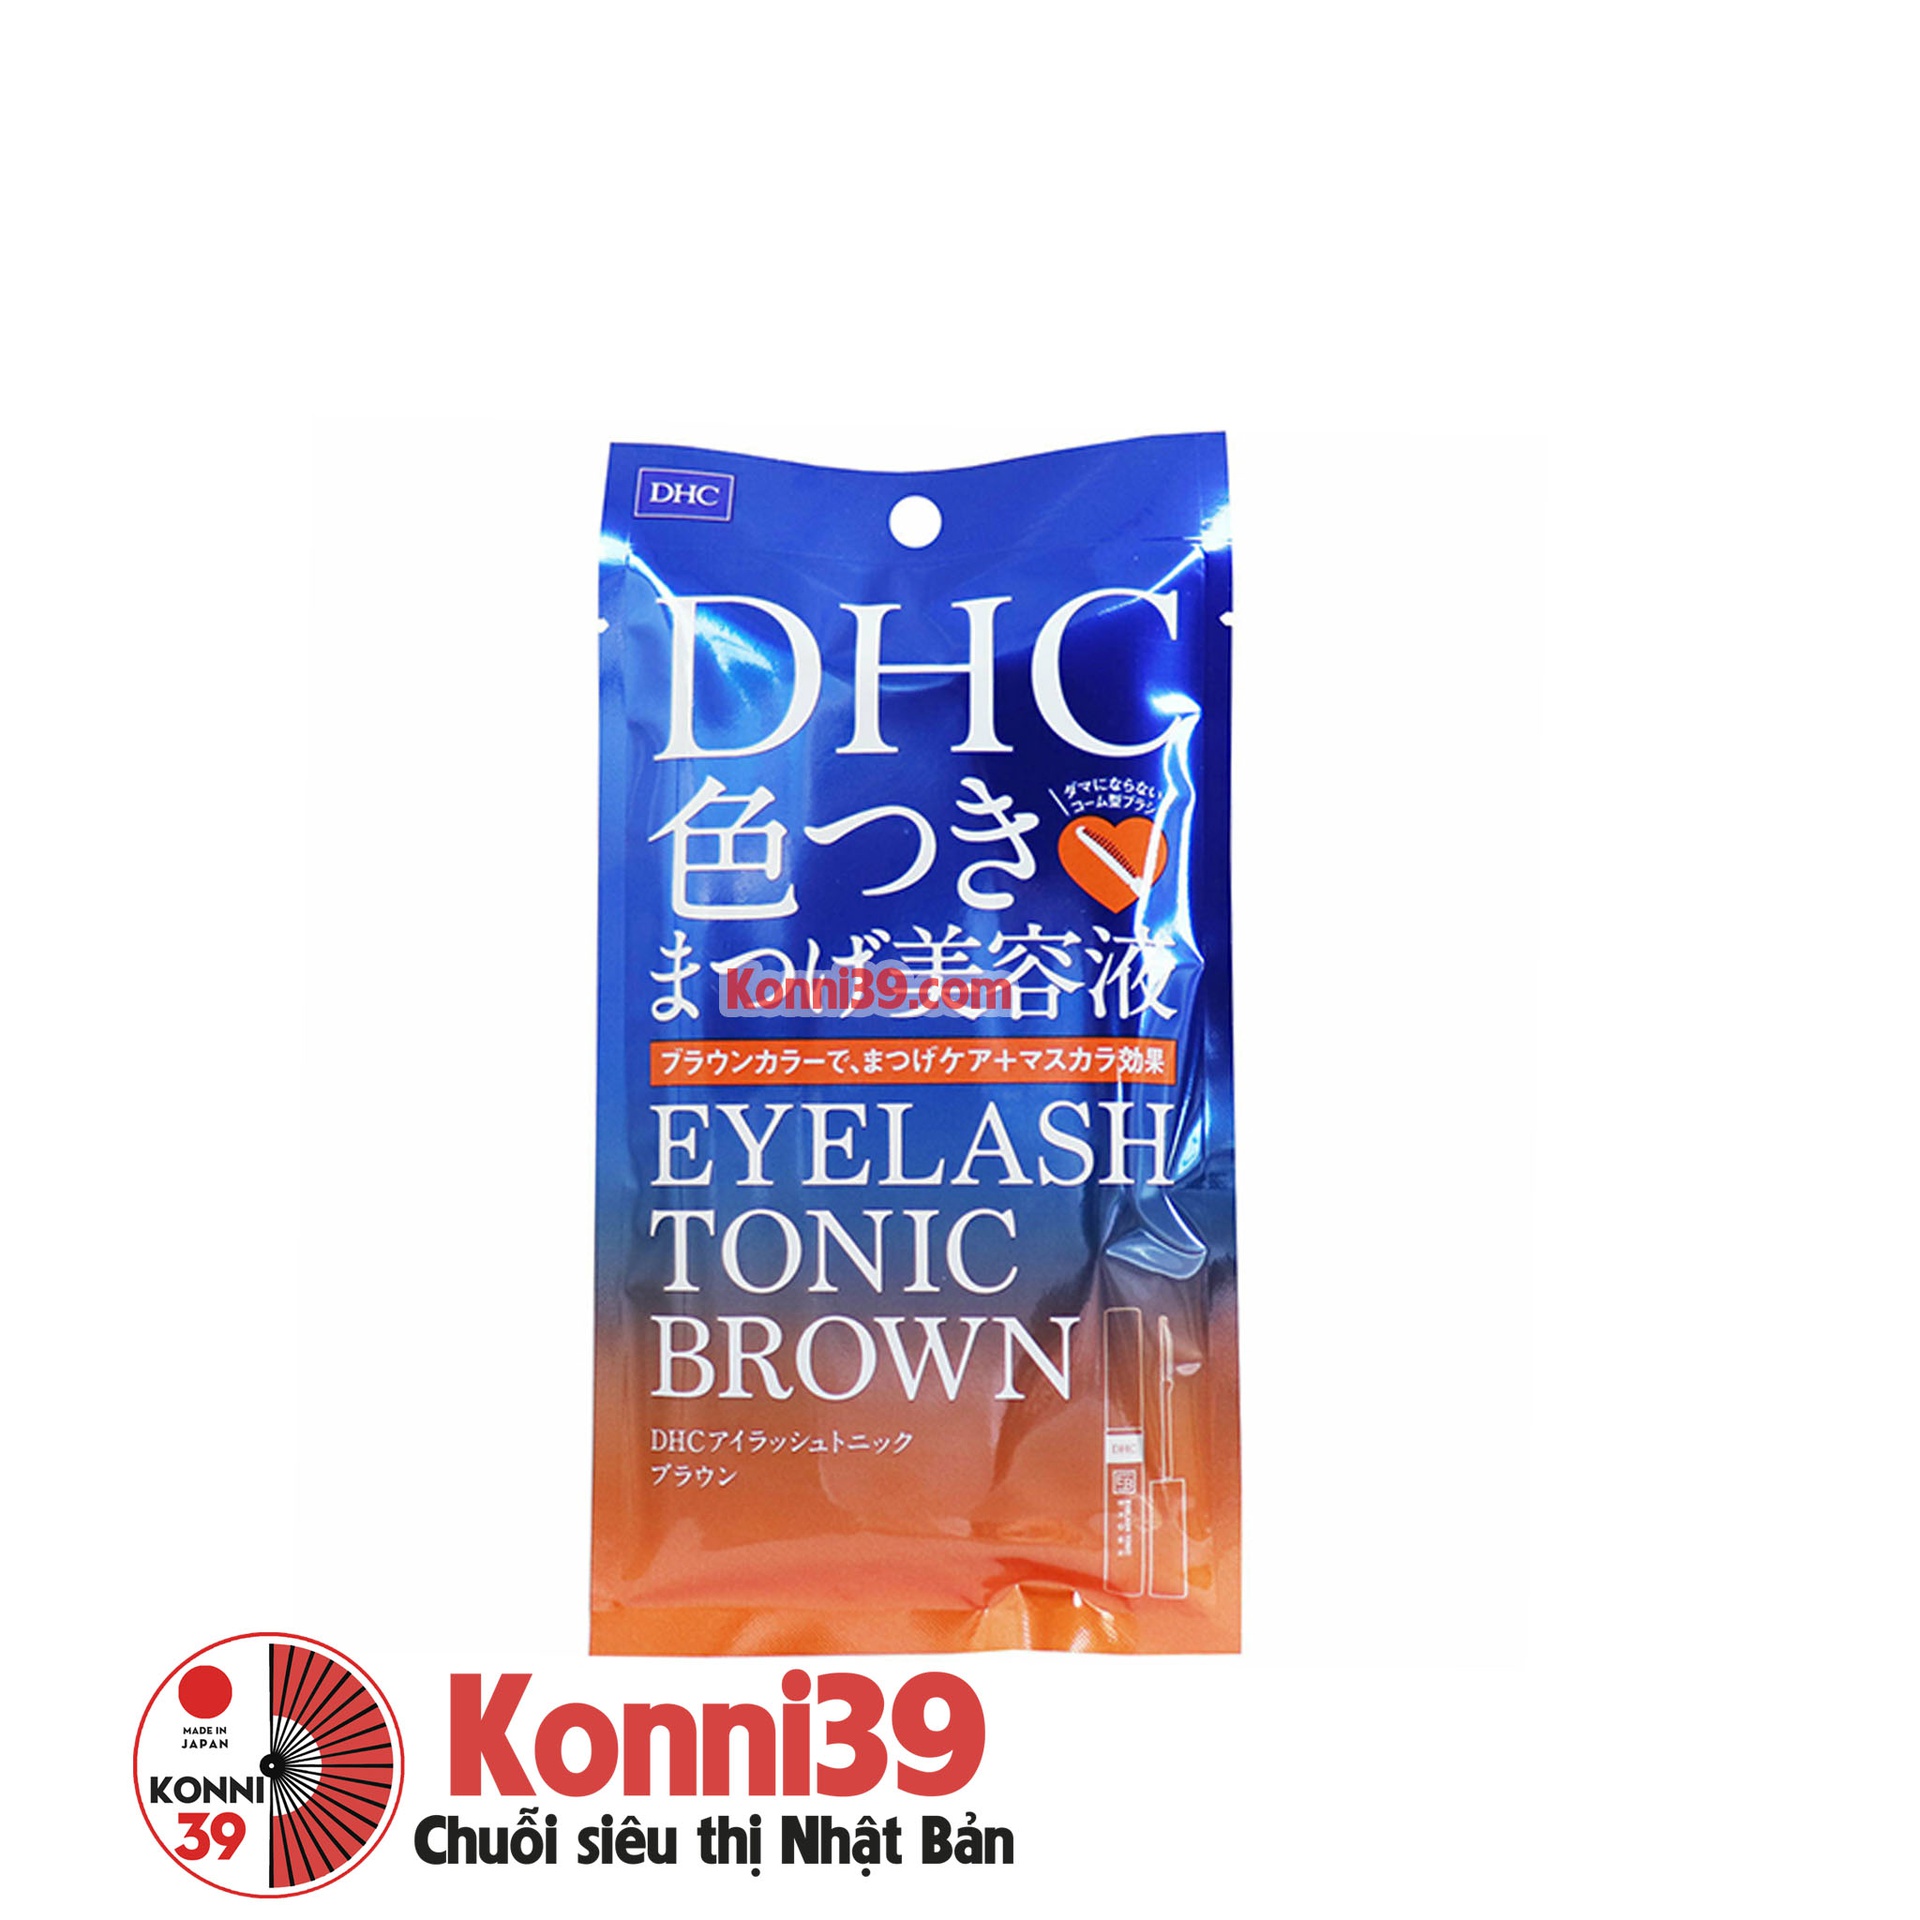 Dưỡng mi DHC Eyelash Tonic Brown 6g